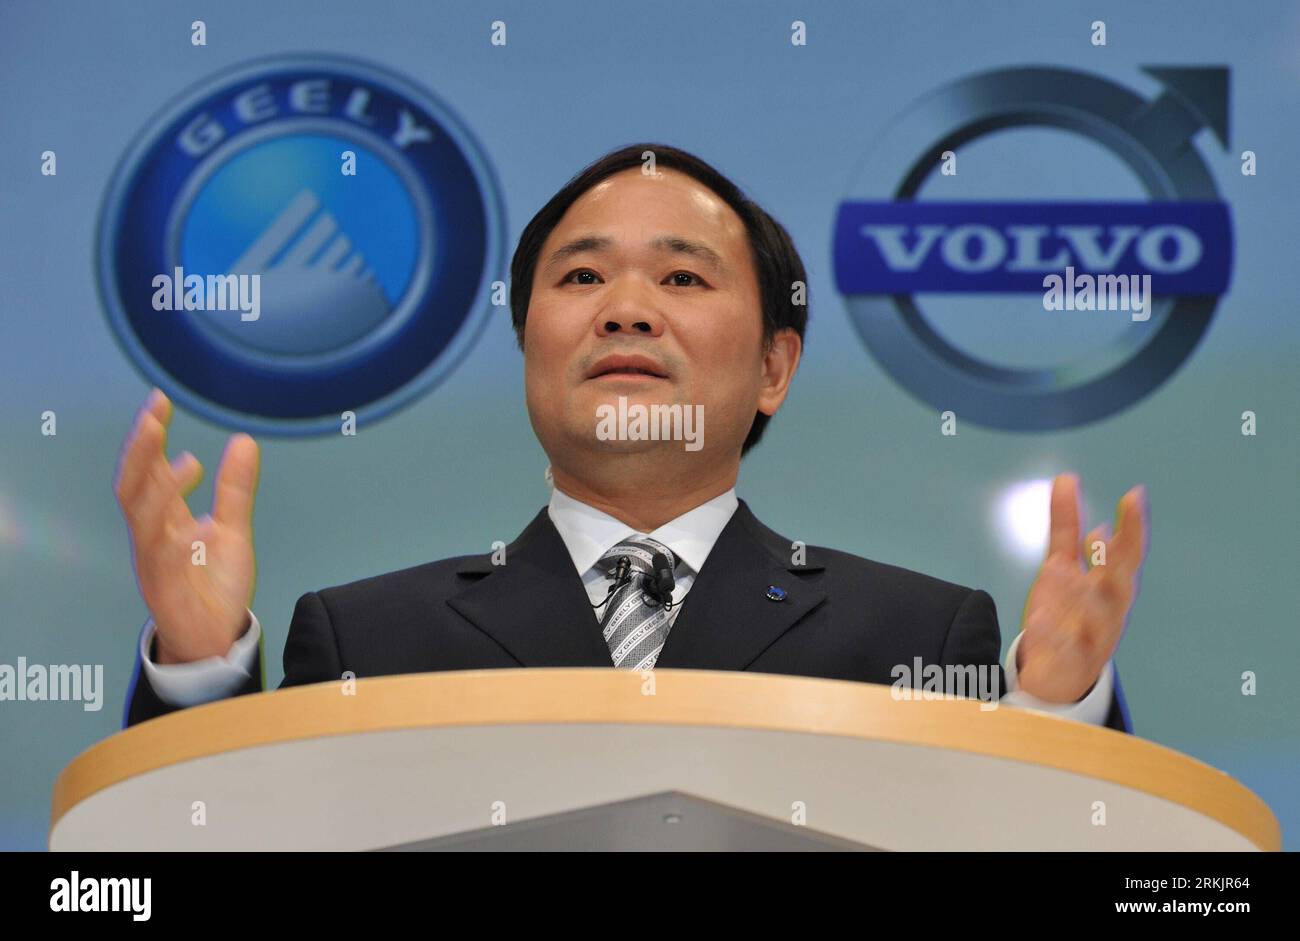 (111008) -- PÉKIN, 8 octobre 2011 (Xinhua) -- le président de Geely, Li Shufu, prononce une conférence de presse après la signature d'un accord avec Ford Motor Co. Sur l'achat de voitures Volvo suédoises par Geely à Goteborg en Suède, le 28 mars 2010. La Volvo car Corp. a été acquise par le groupe chinois Geely en 2010, marquant la première fois qu un constructeur automobile chinois a acquis une société automobile de marque internationale. À l'heure actuelle, l'Asie joue un rôle important dans ce mot que personne ne peut ignorer. Les économies émergentes comme la Chine et l’Inde ont été le pôle de croissance le plus actif de l’économie mondiale. Financial Times a dit, Th Banque D'Images